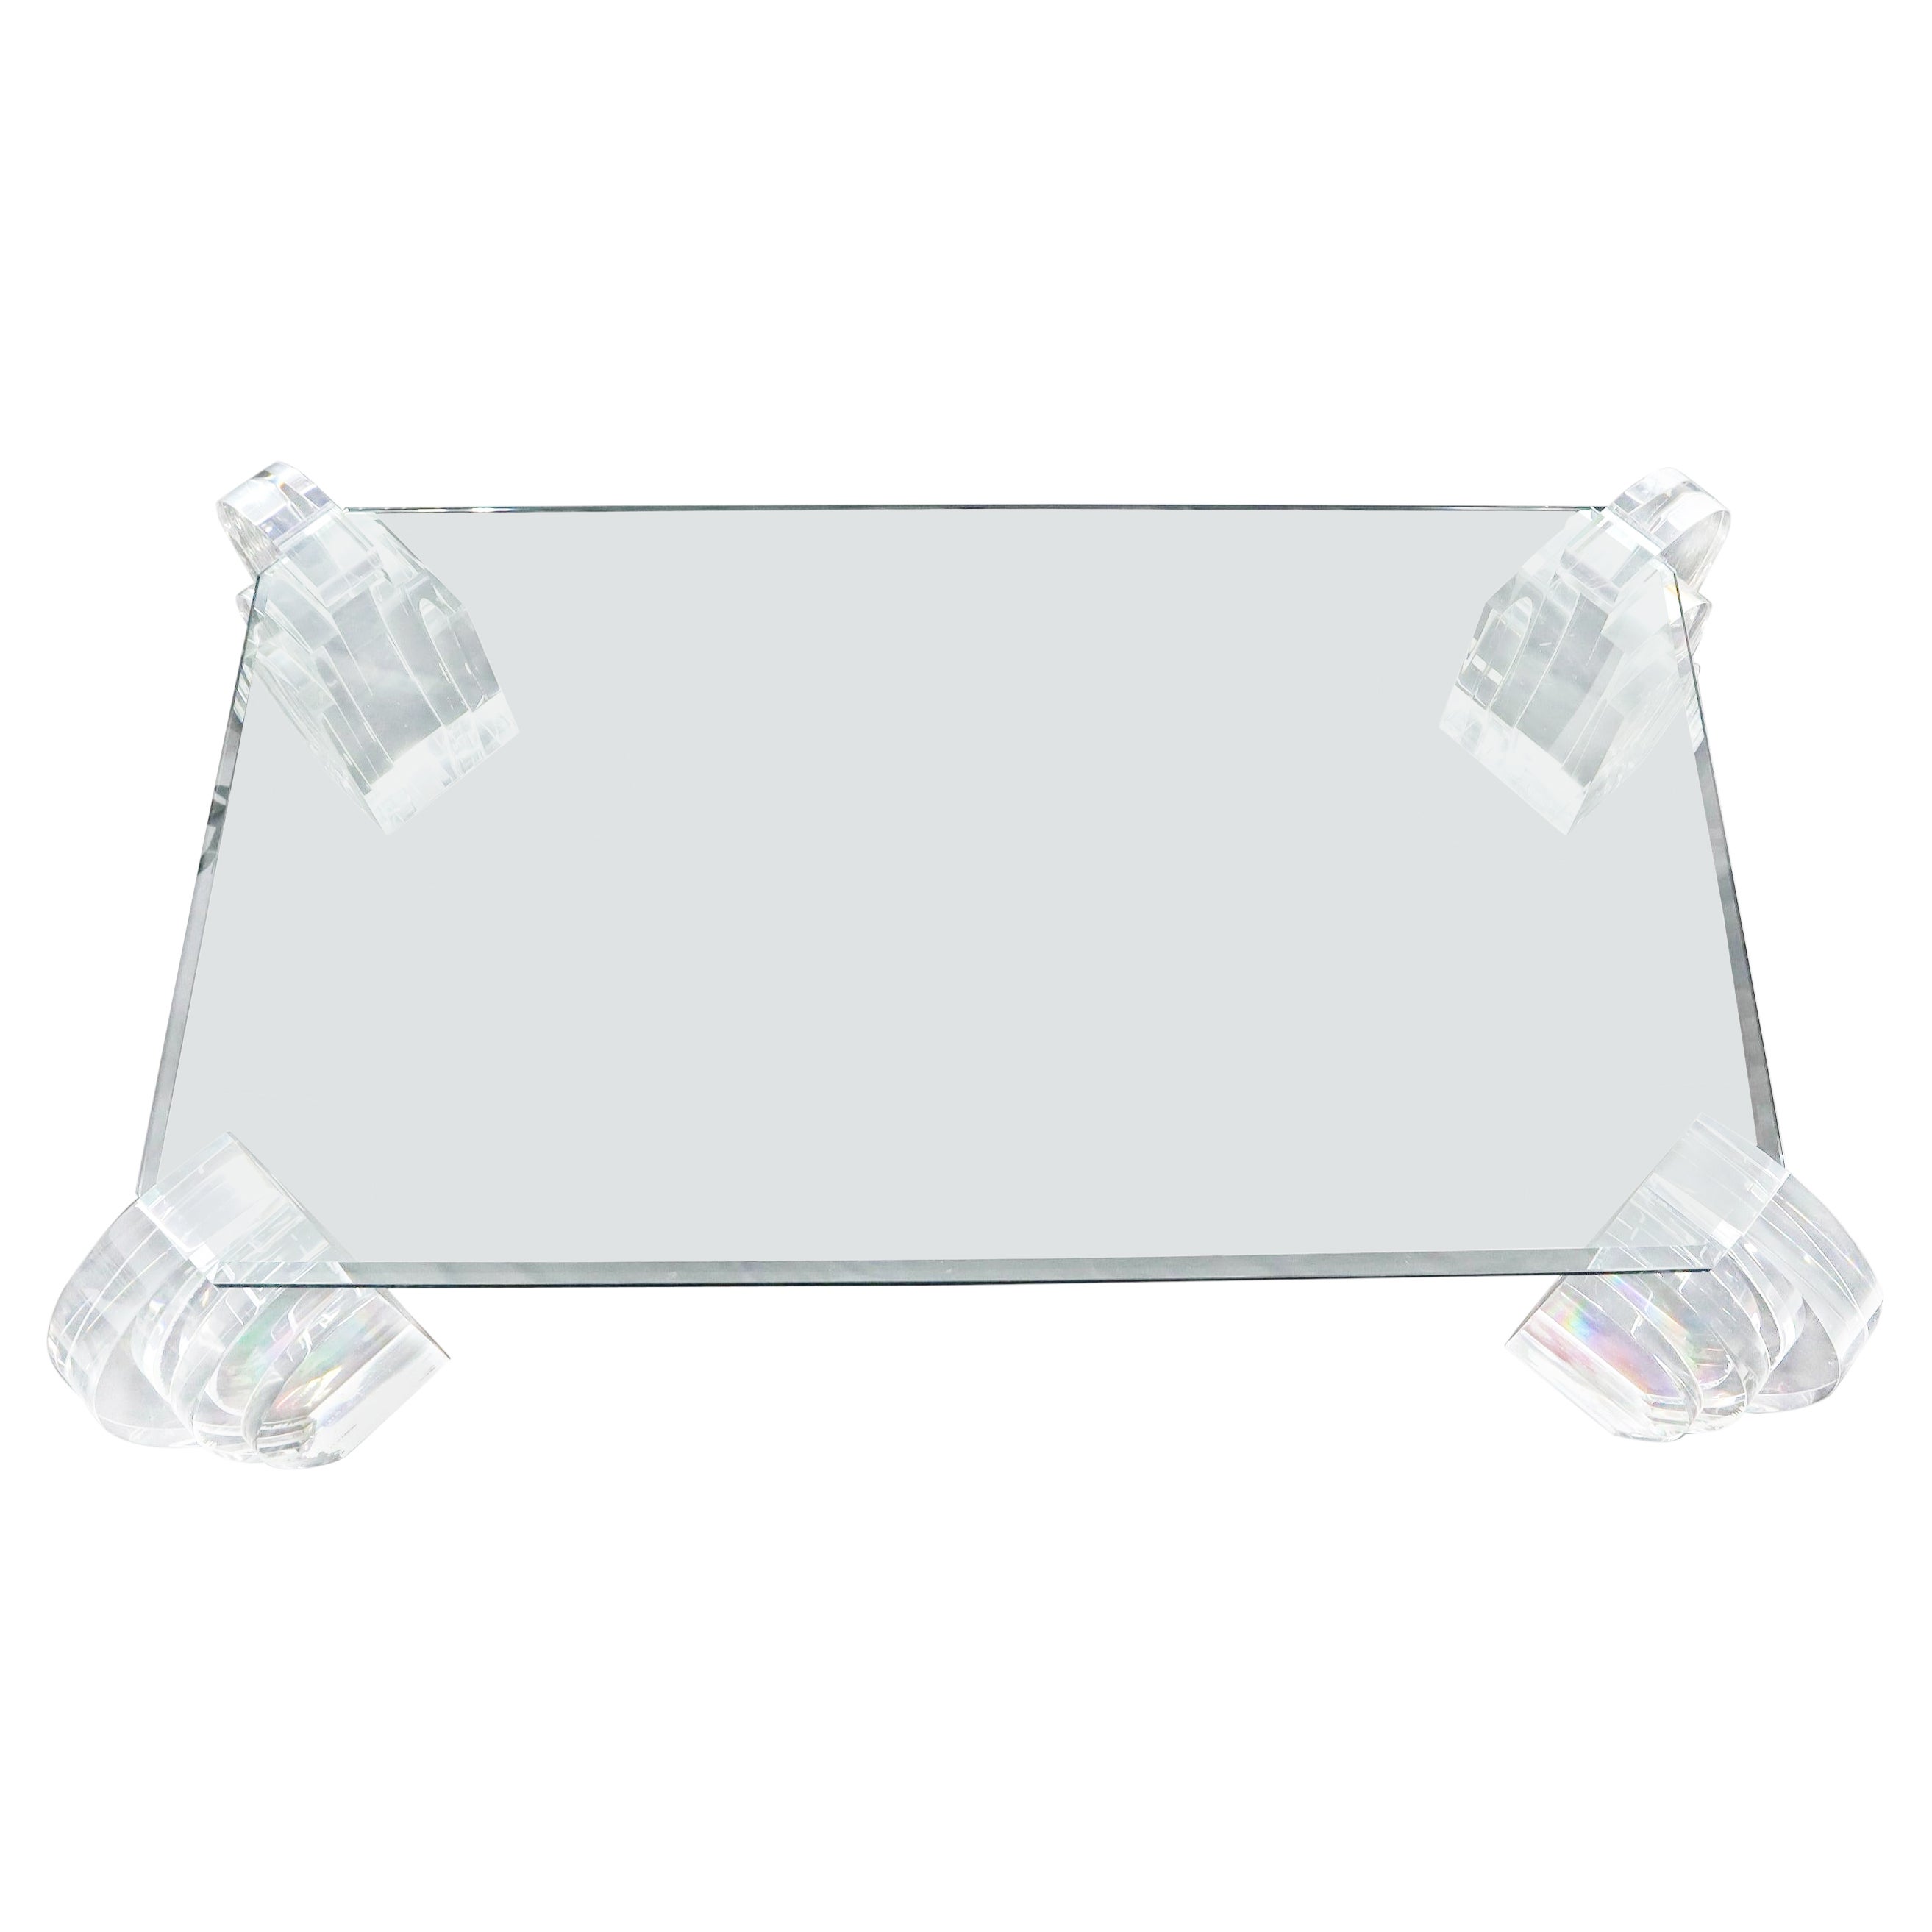 Grande table basse surdimensionnée à base en lucite et plateau en verre, angle rectangulaire